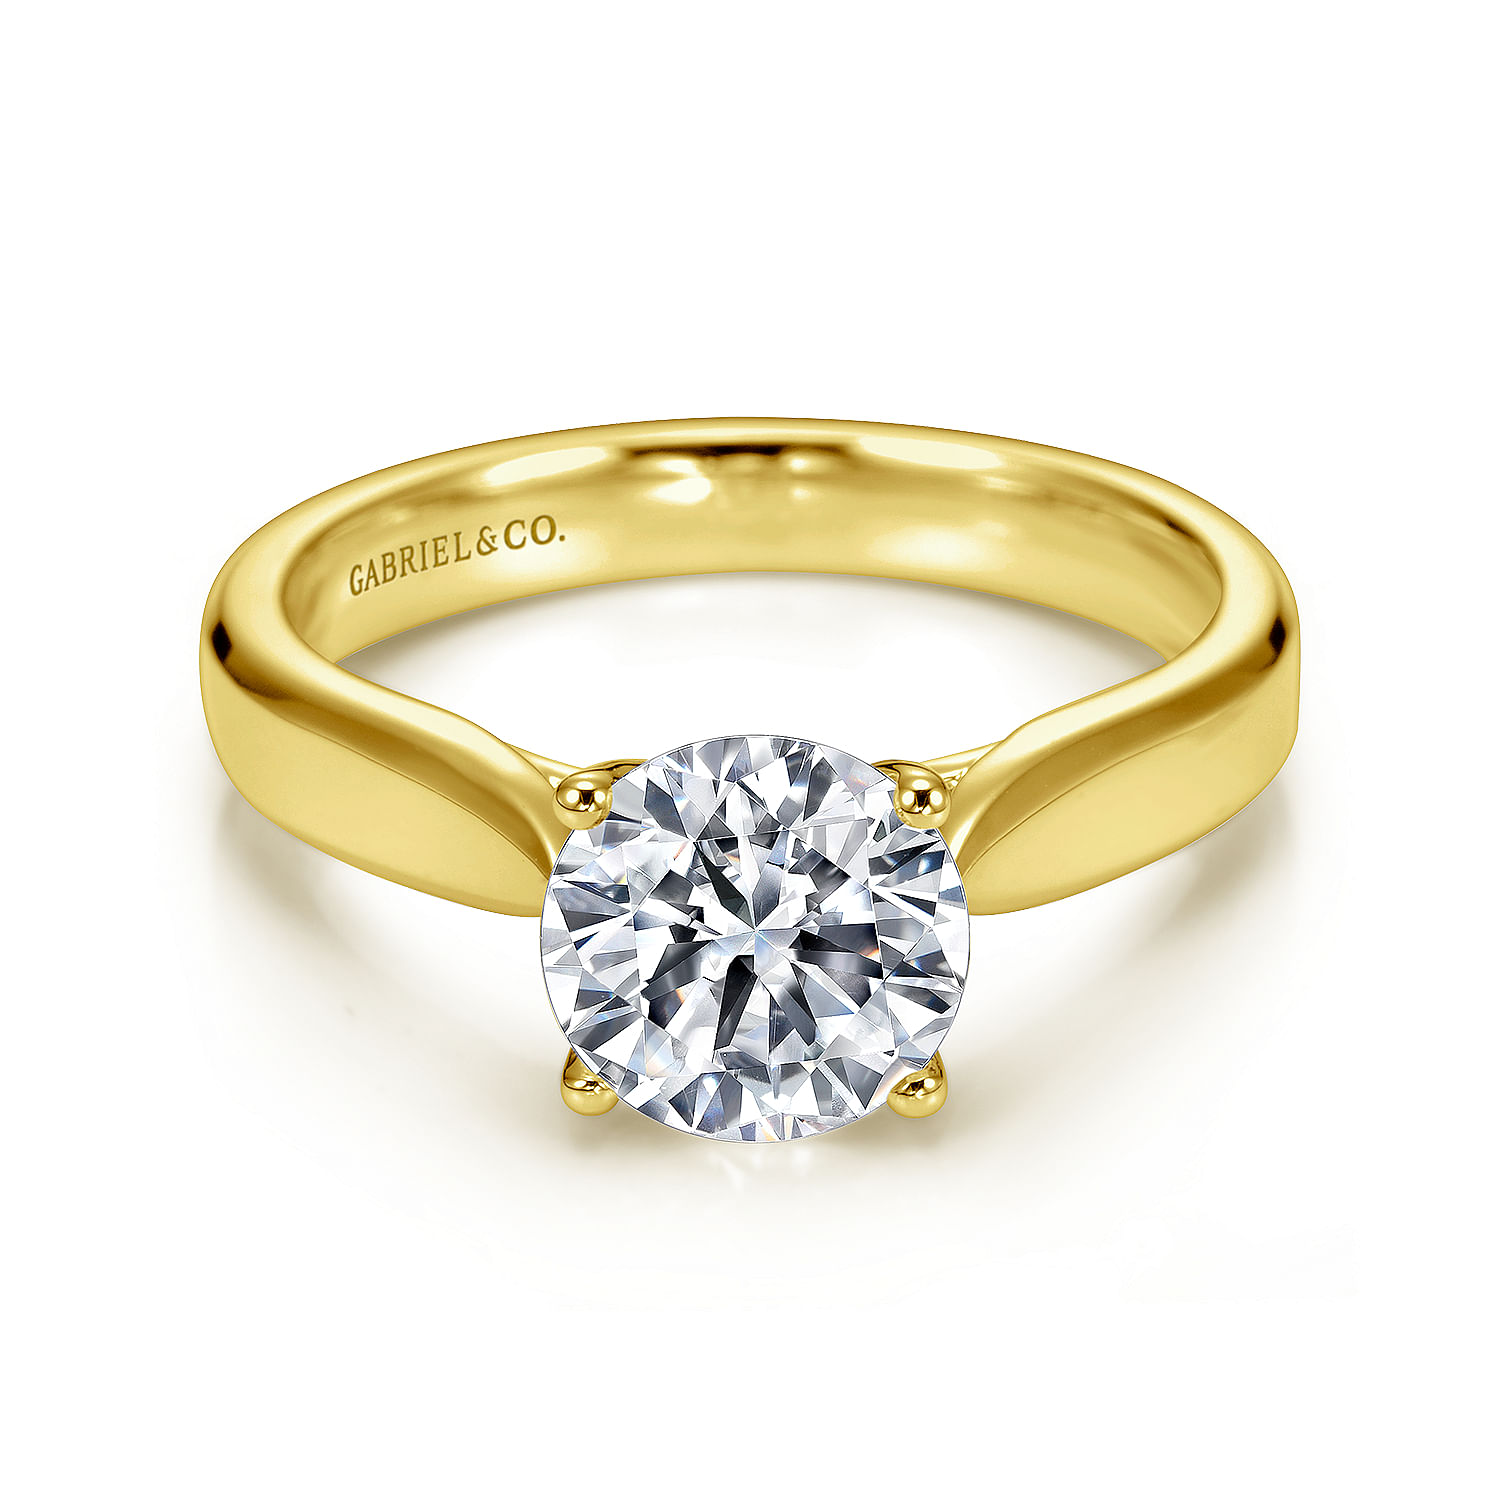 Jamie---14K-Yellow-Gold-Round-Diamond-Engagement-Ring1